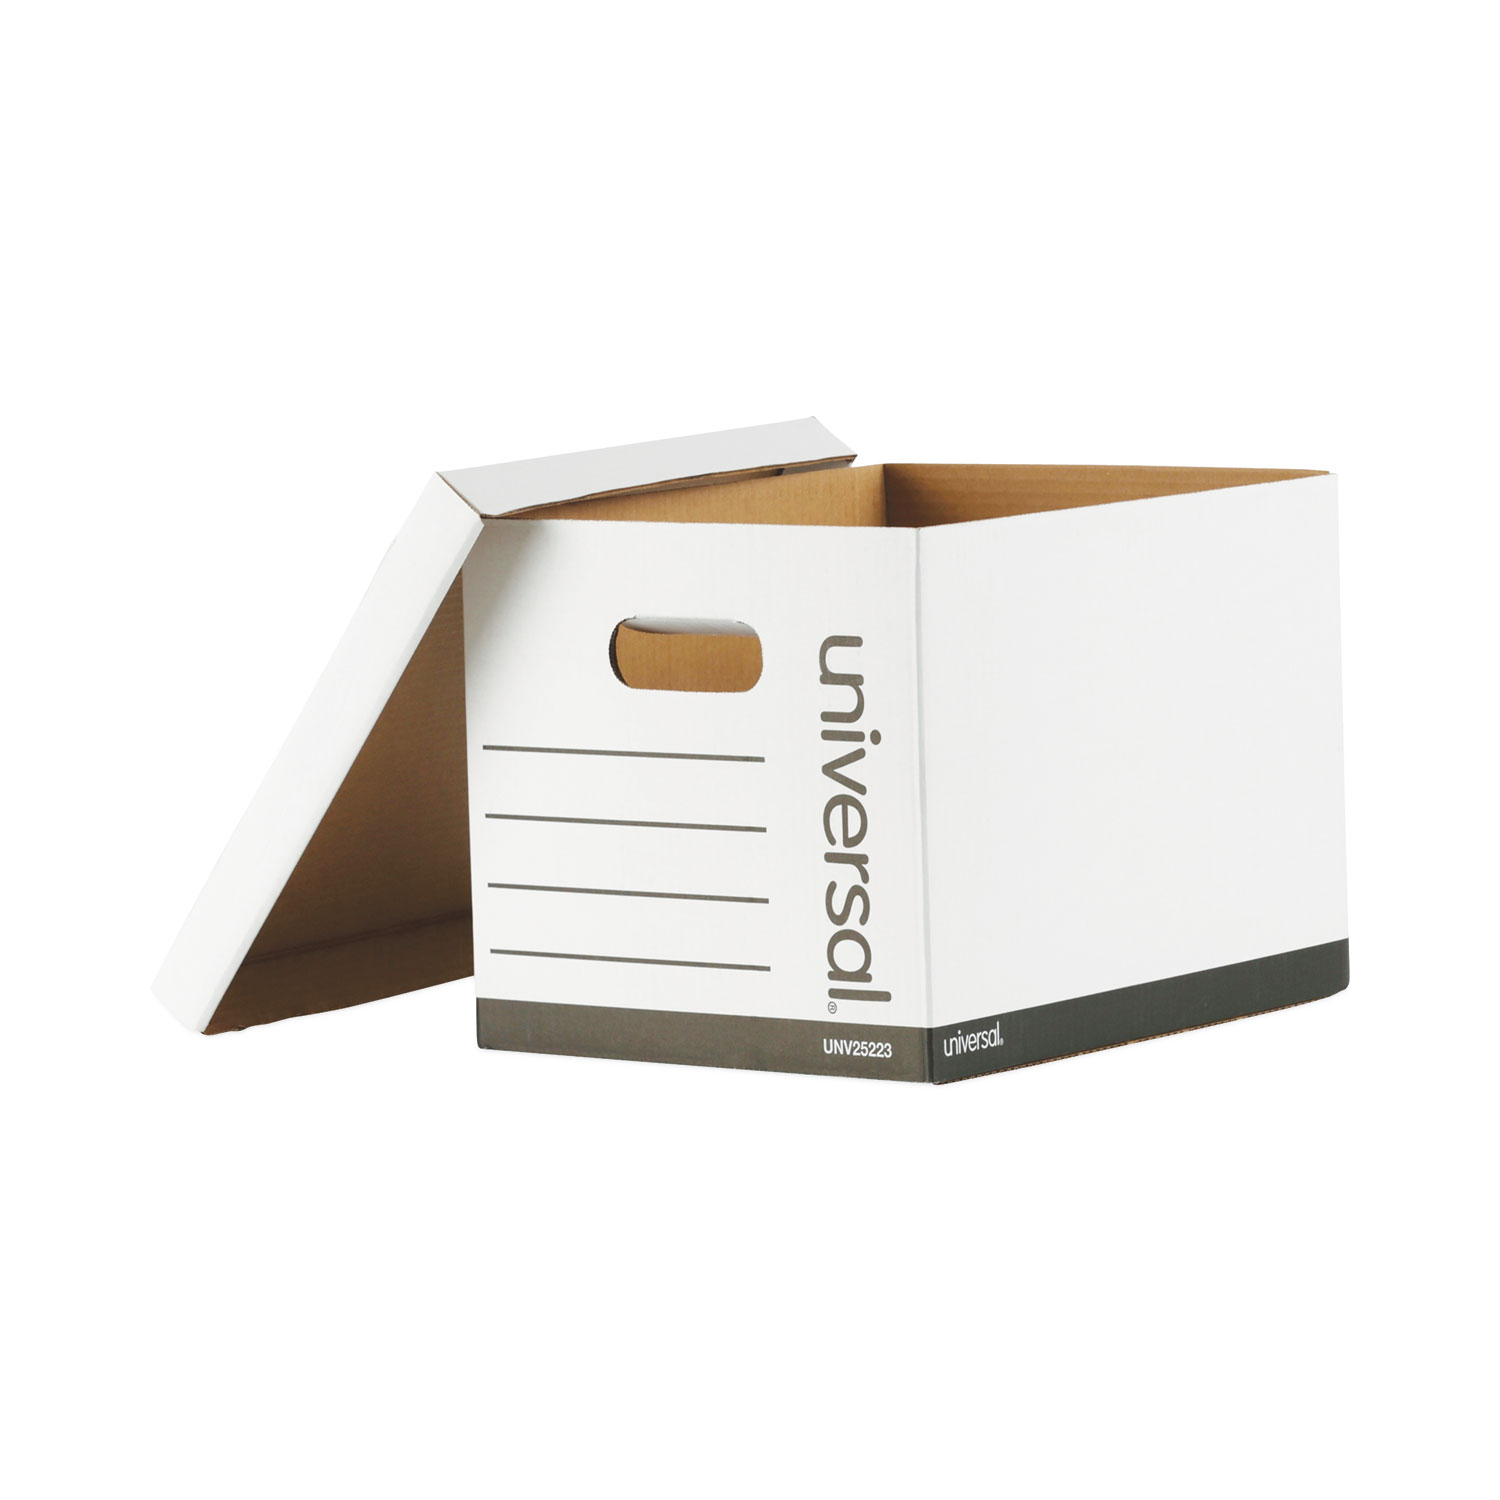 IDR SOLD jt. Pre💓LV VVGC strap mono panjang 105cm, box, DB, card and  receipt 2020